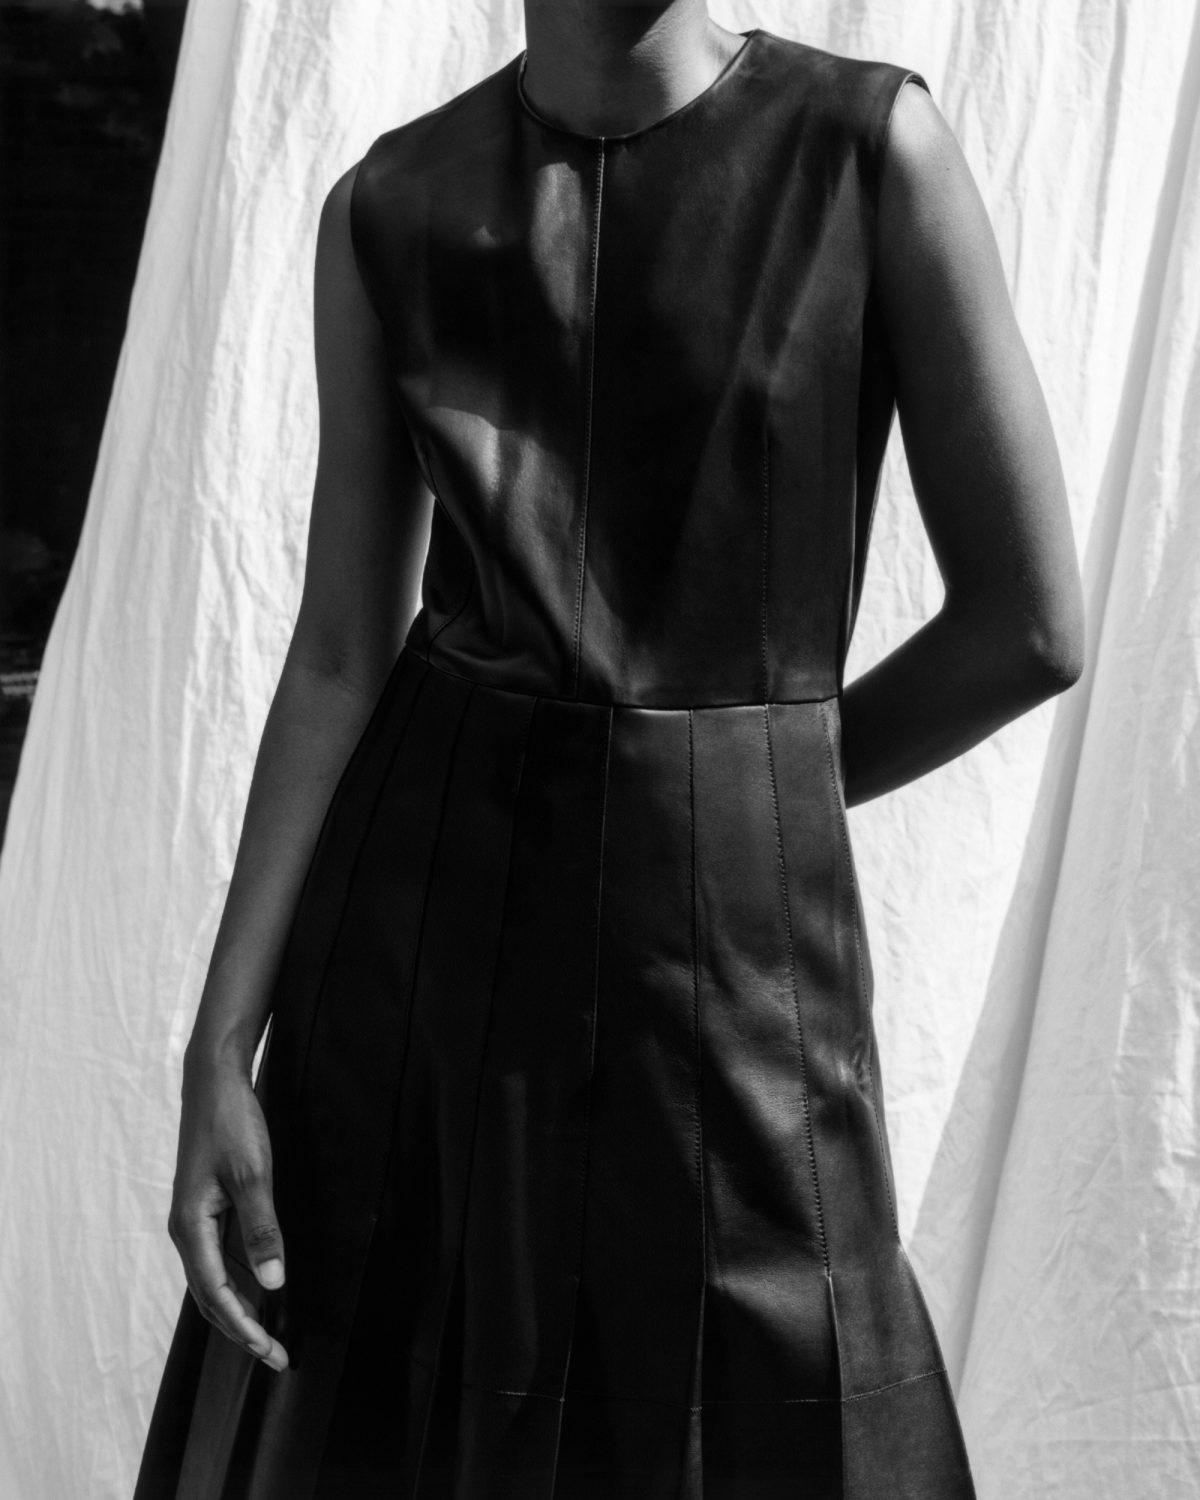 Dress by Joseph Golden Hue: Ana Barbosa by Auriane Defert for Also Journal September 2020